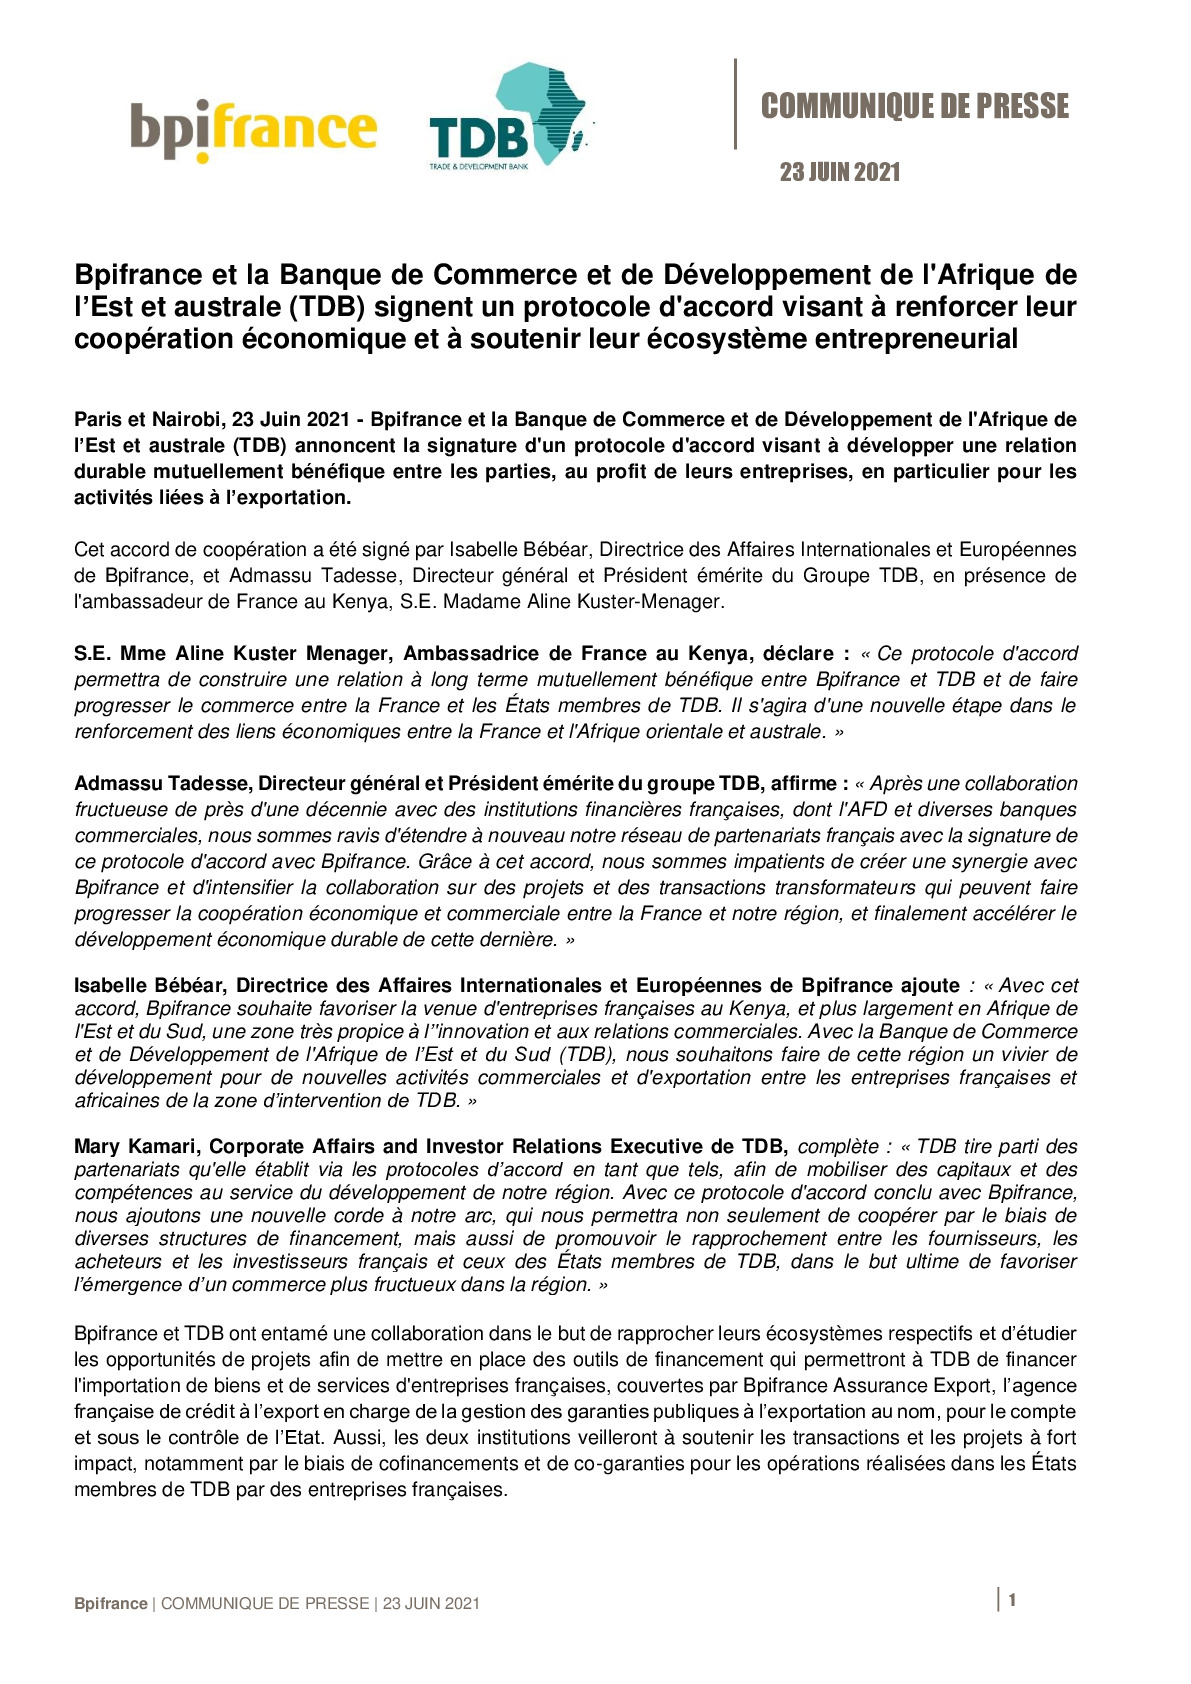 2021 06 23 – CP Bpifrance et la Banque de Commerce et de Developpement de lAfrique orientale et australe TDB signent un protocole daccord-pdf